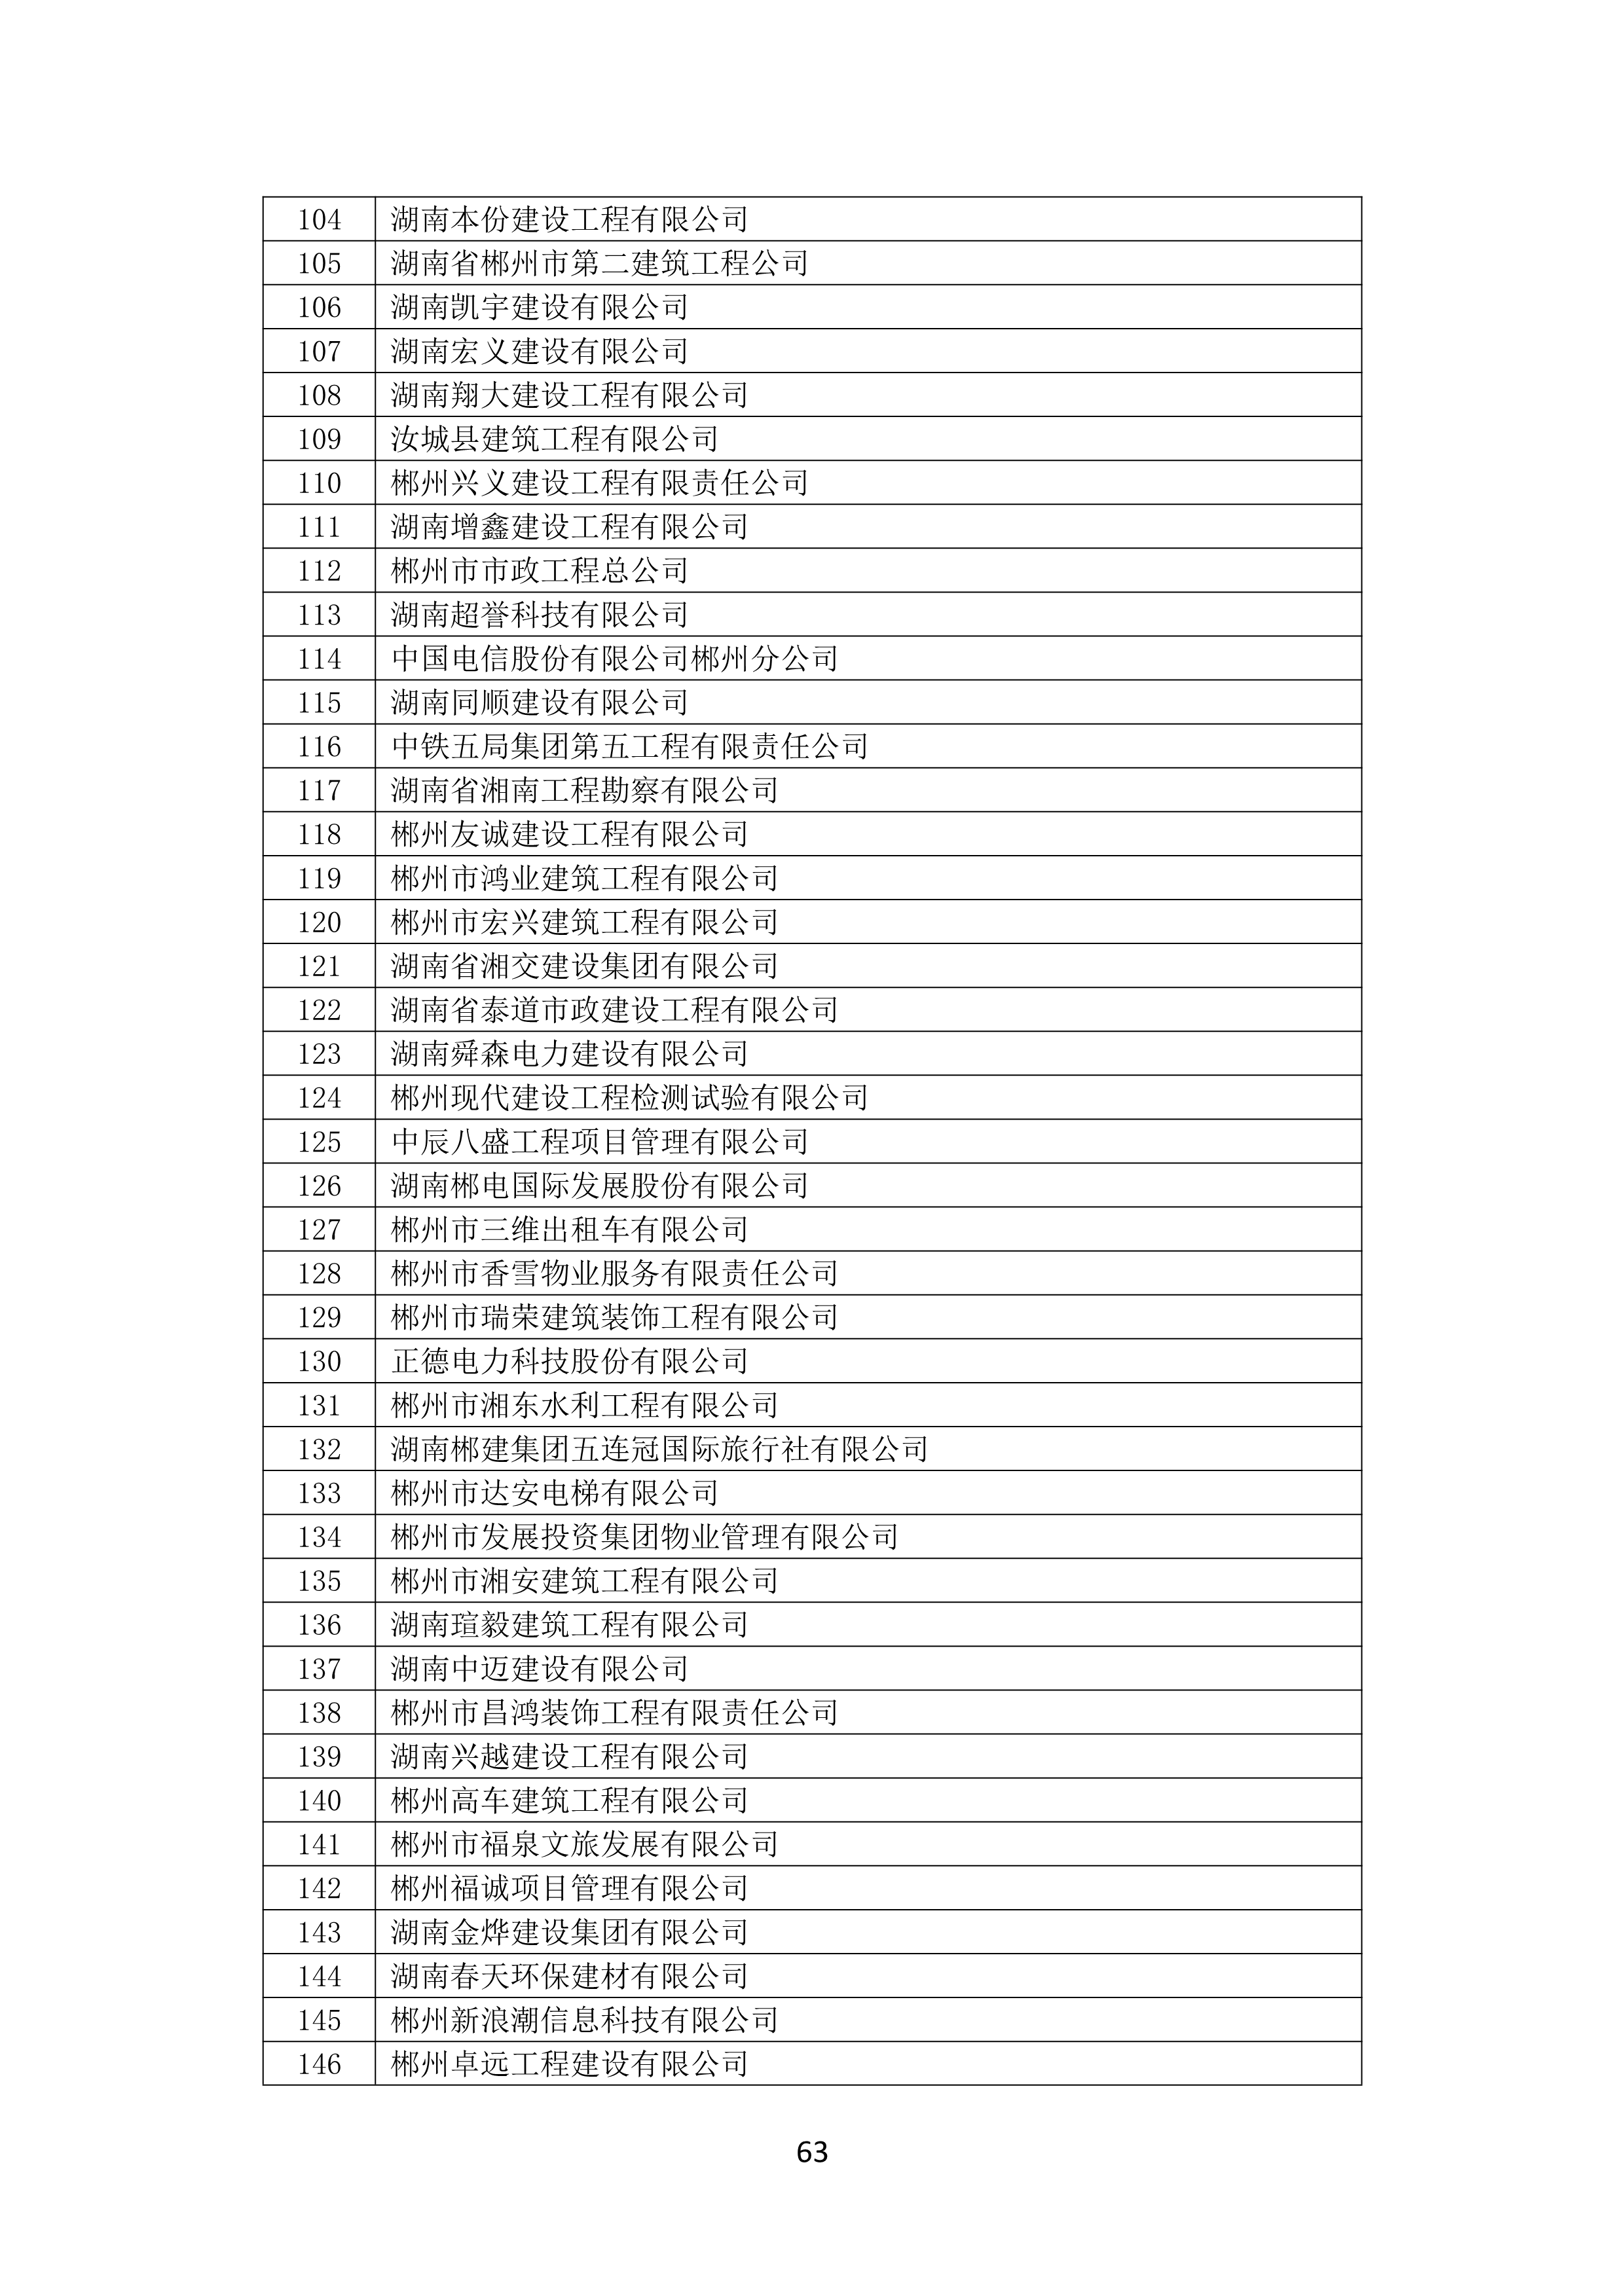 2021 年(nián)度湖南省守合同重信用企業名單_64.png